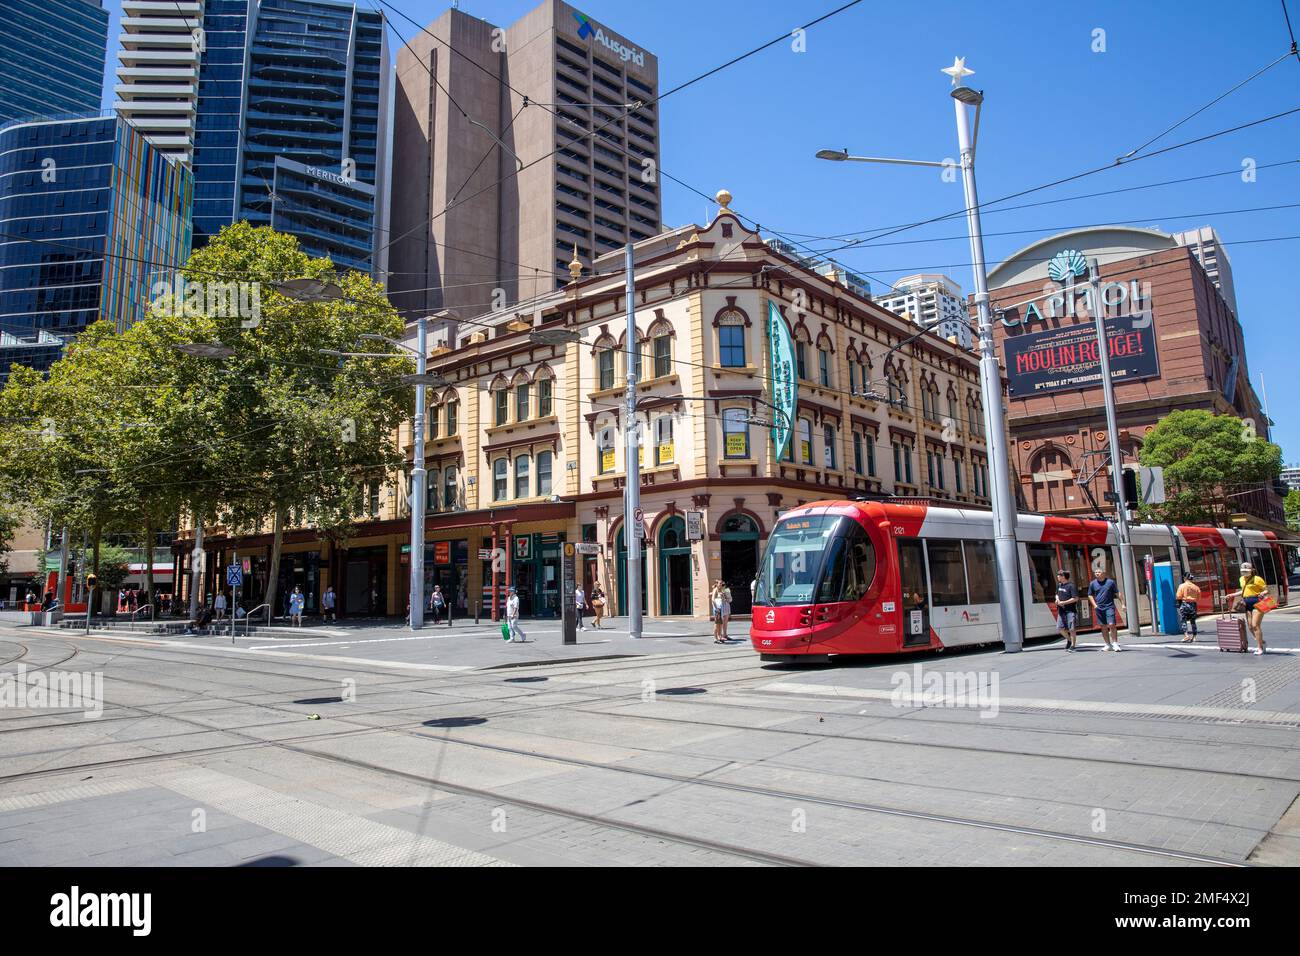 Centre-ville de Sydney Australie et train léger de Sydney dans le quartier central des affaires, Nouvelle-Galles du Sud, Australie Banque D'Images